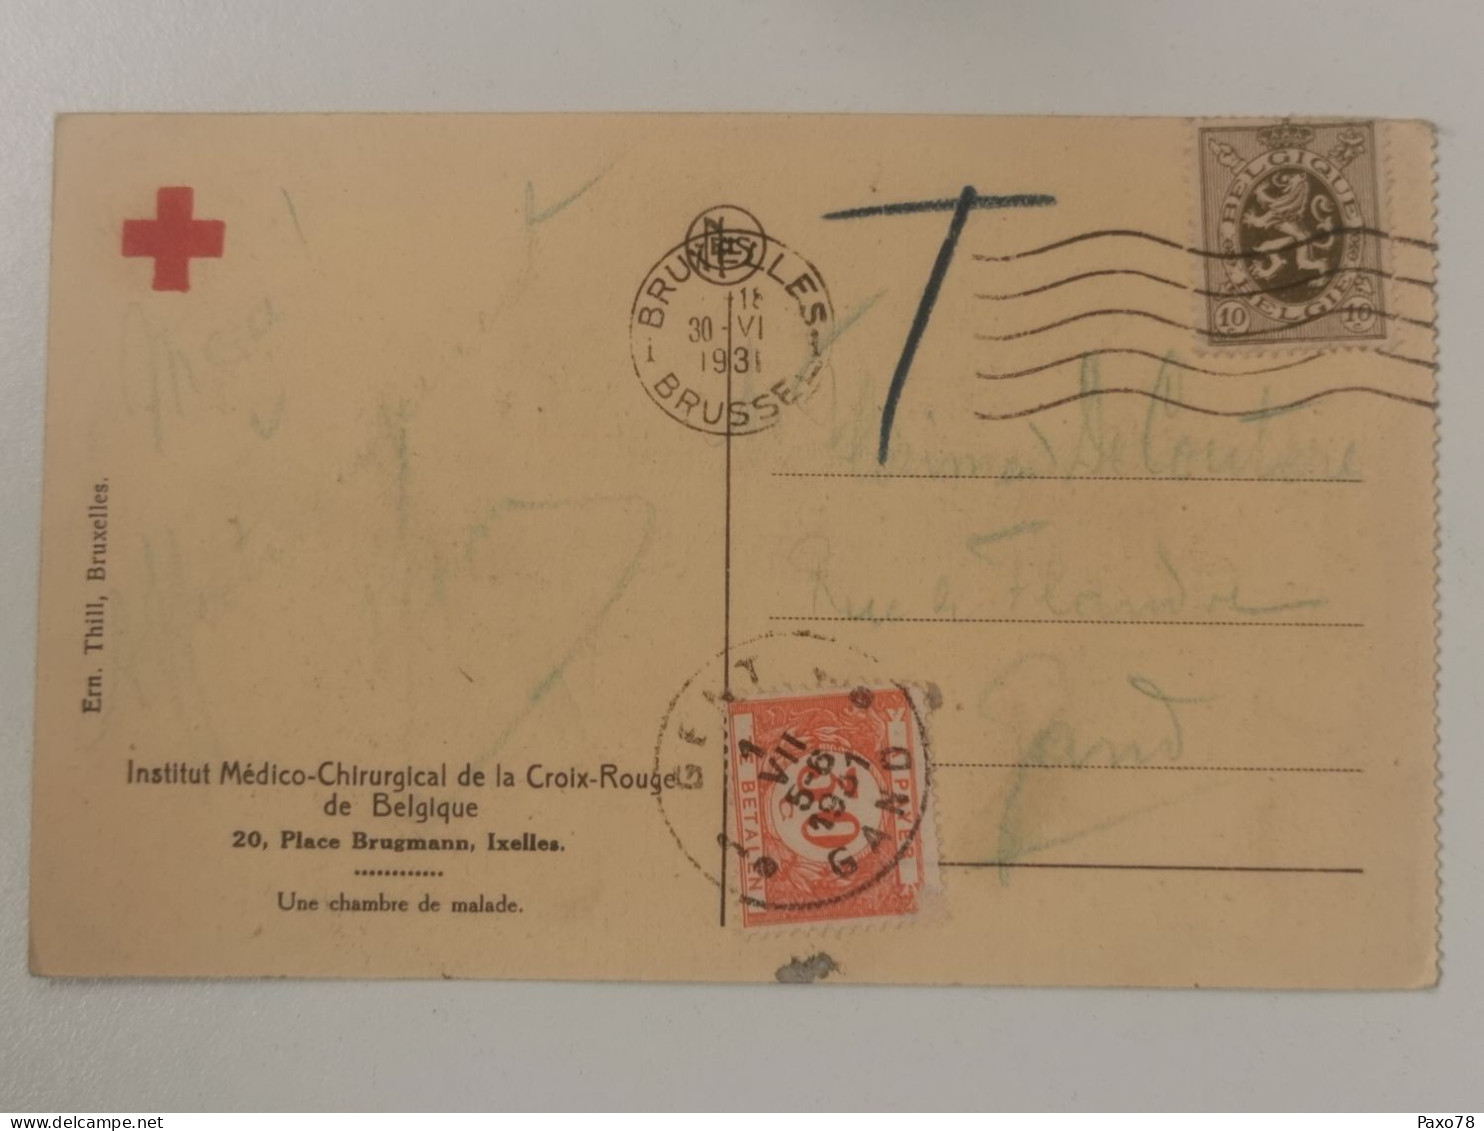 Ixelles, Institut Medico Chirurgical De La Croix Rouge, Une Chambre De Malade - Ixelles - Elsene